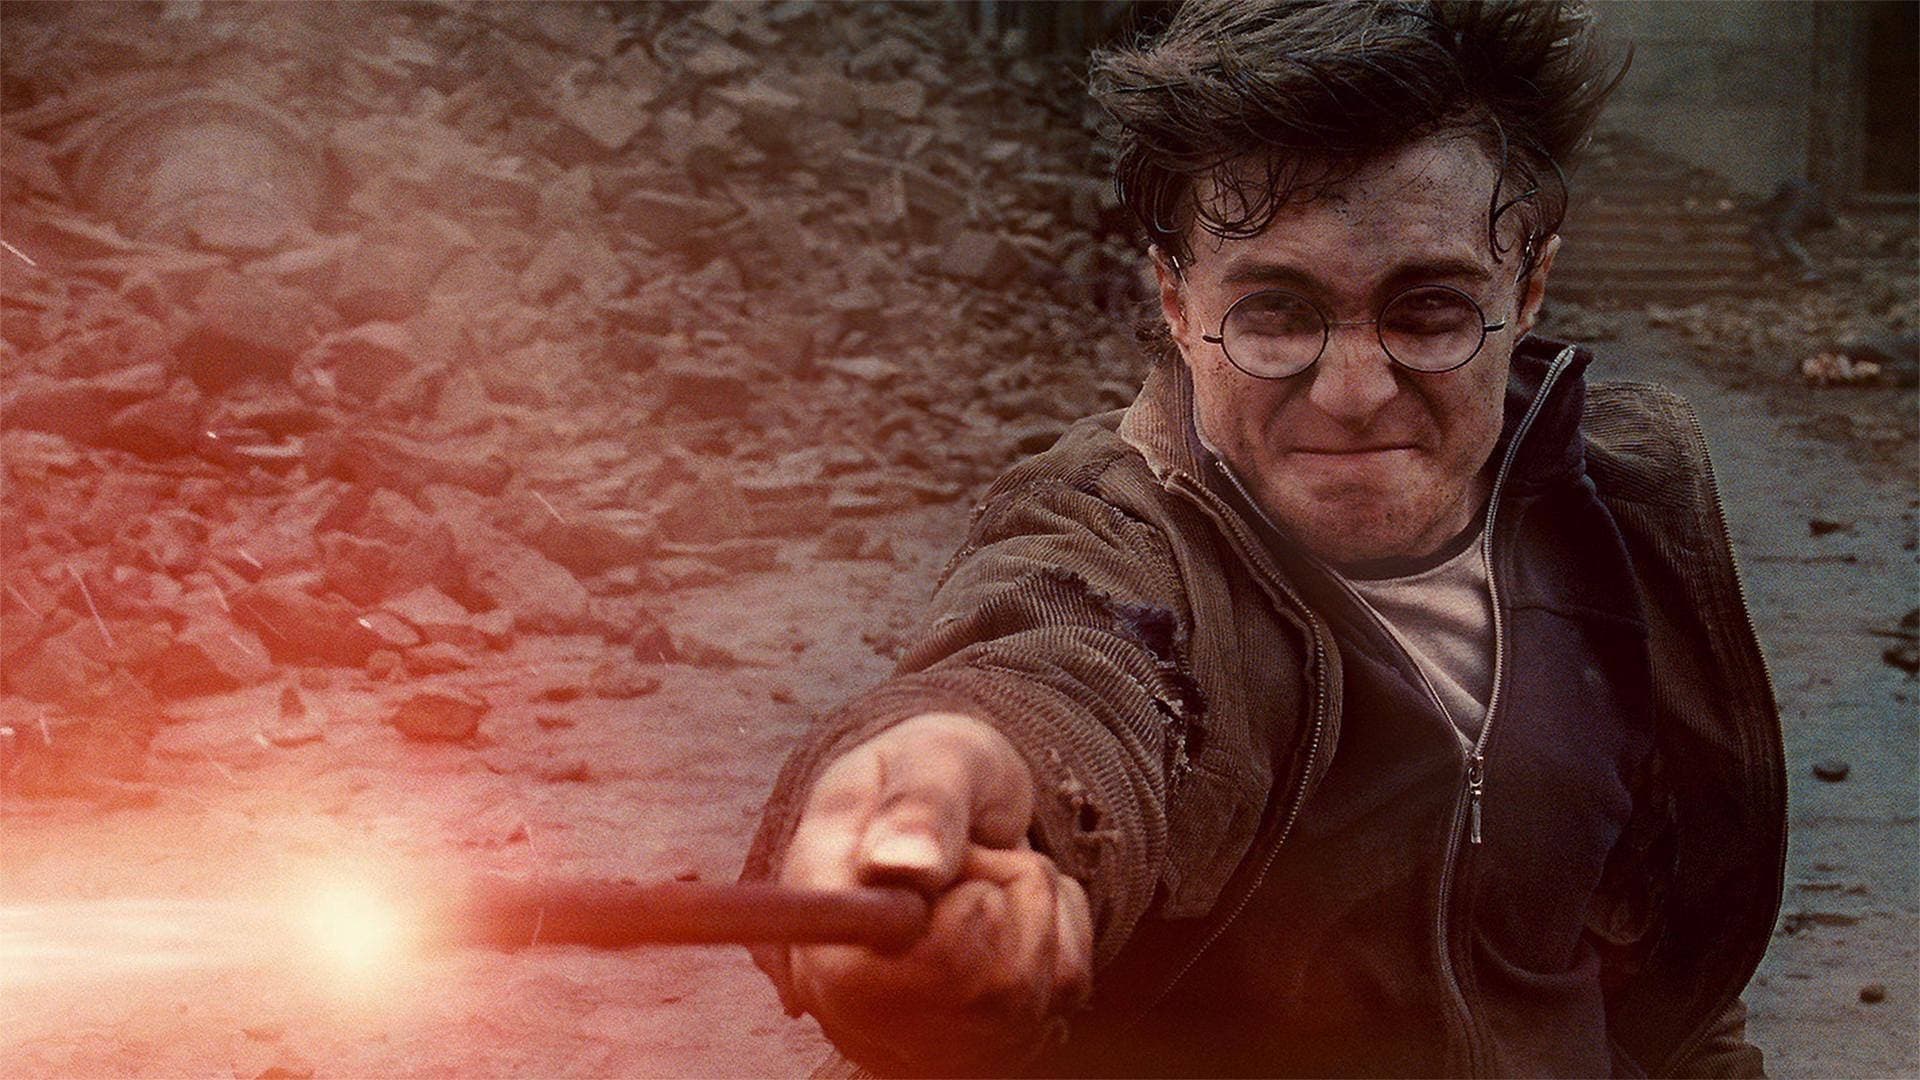 Harry Potter và Bảo Bối Tử Thần: Phần 2 (2011)